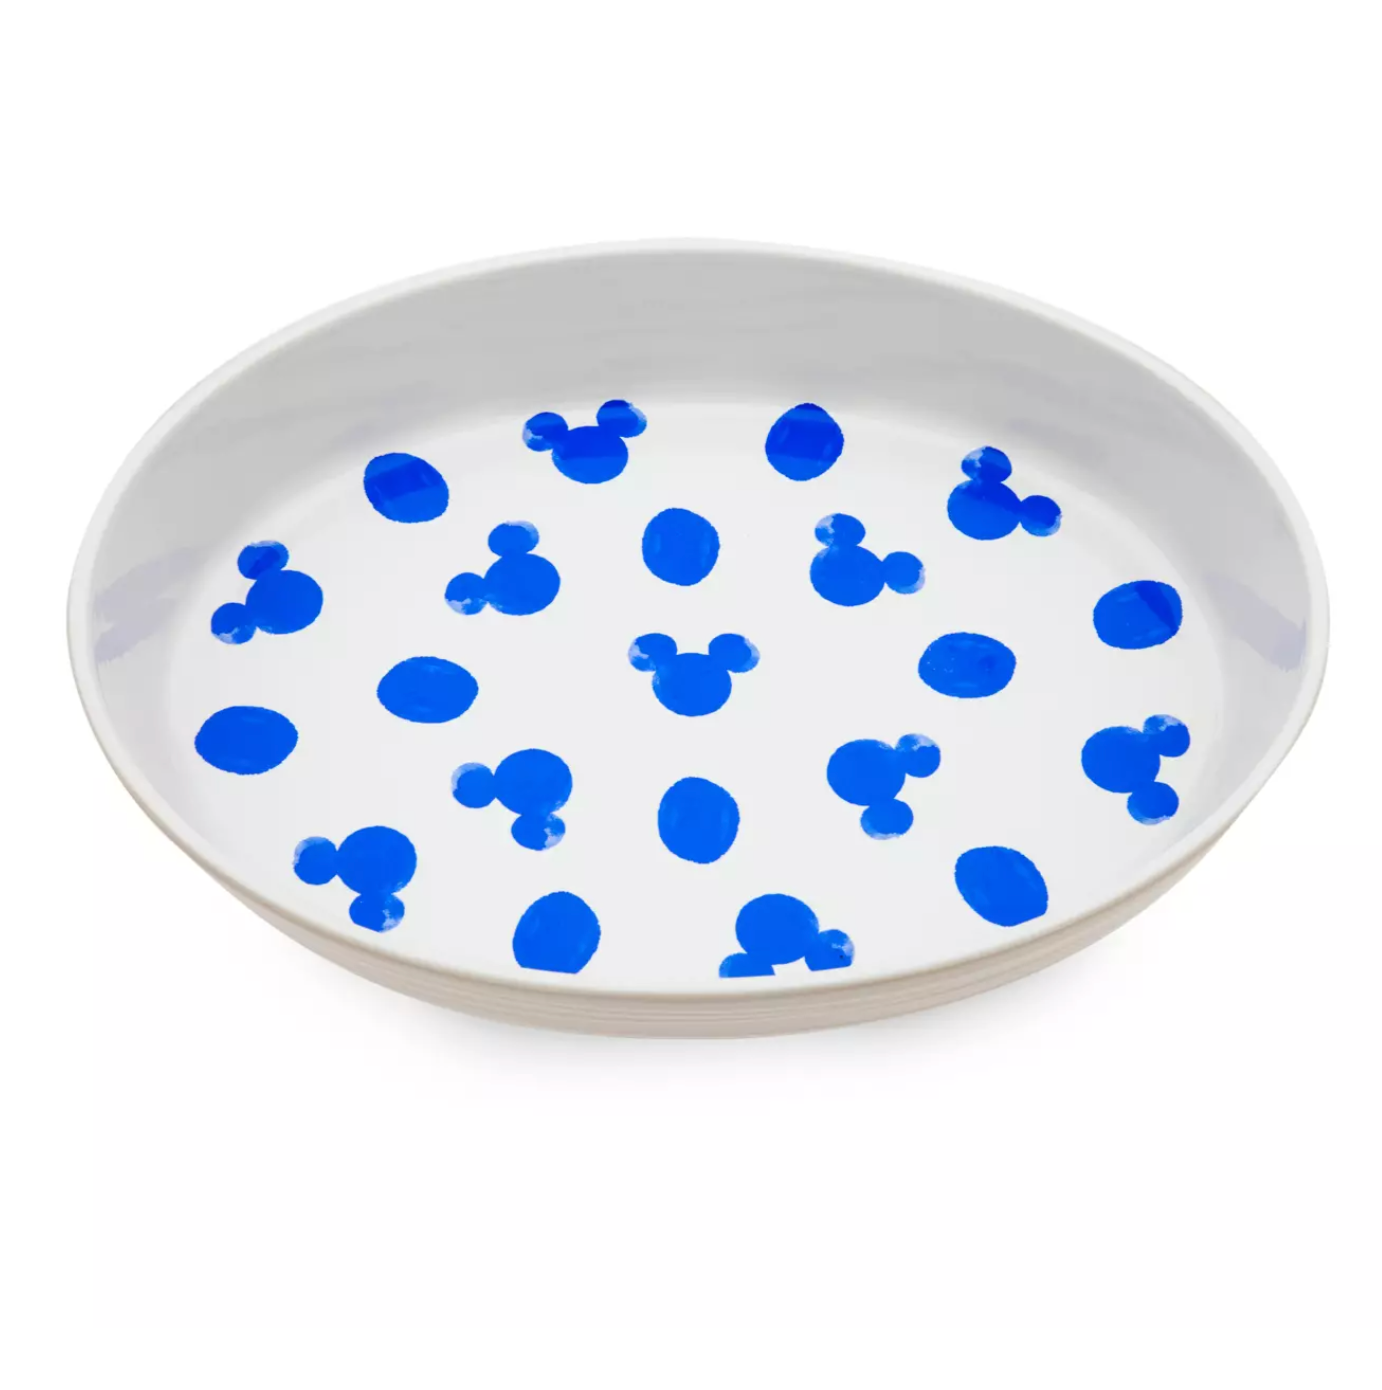 Disney Parks Homestead Blue Mickey Icon and Polka Dots Kitchen Ceramic Tray New